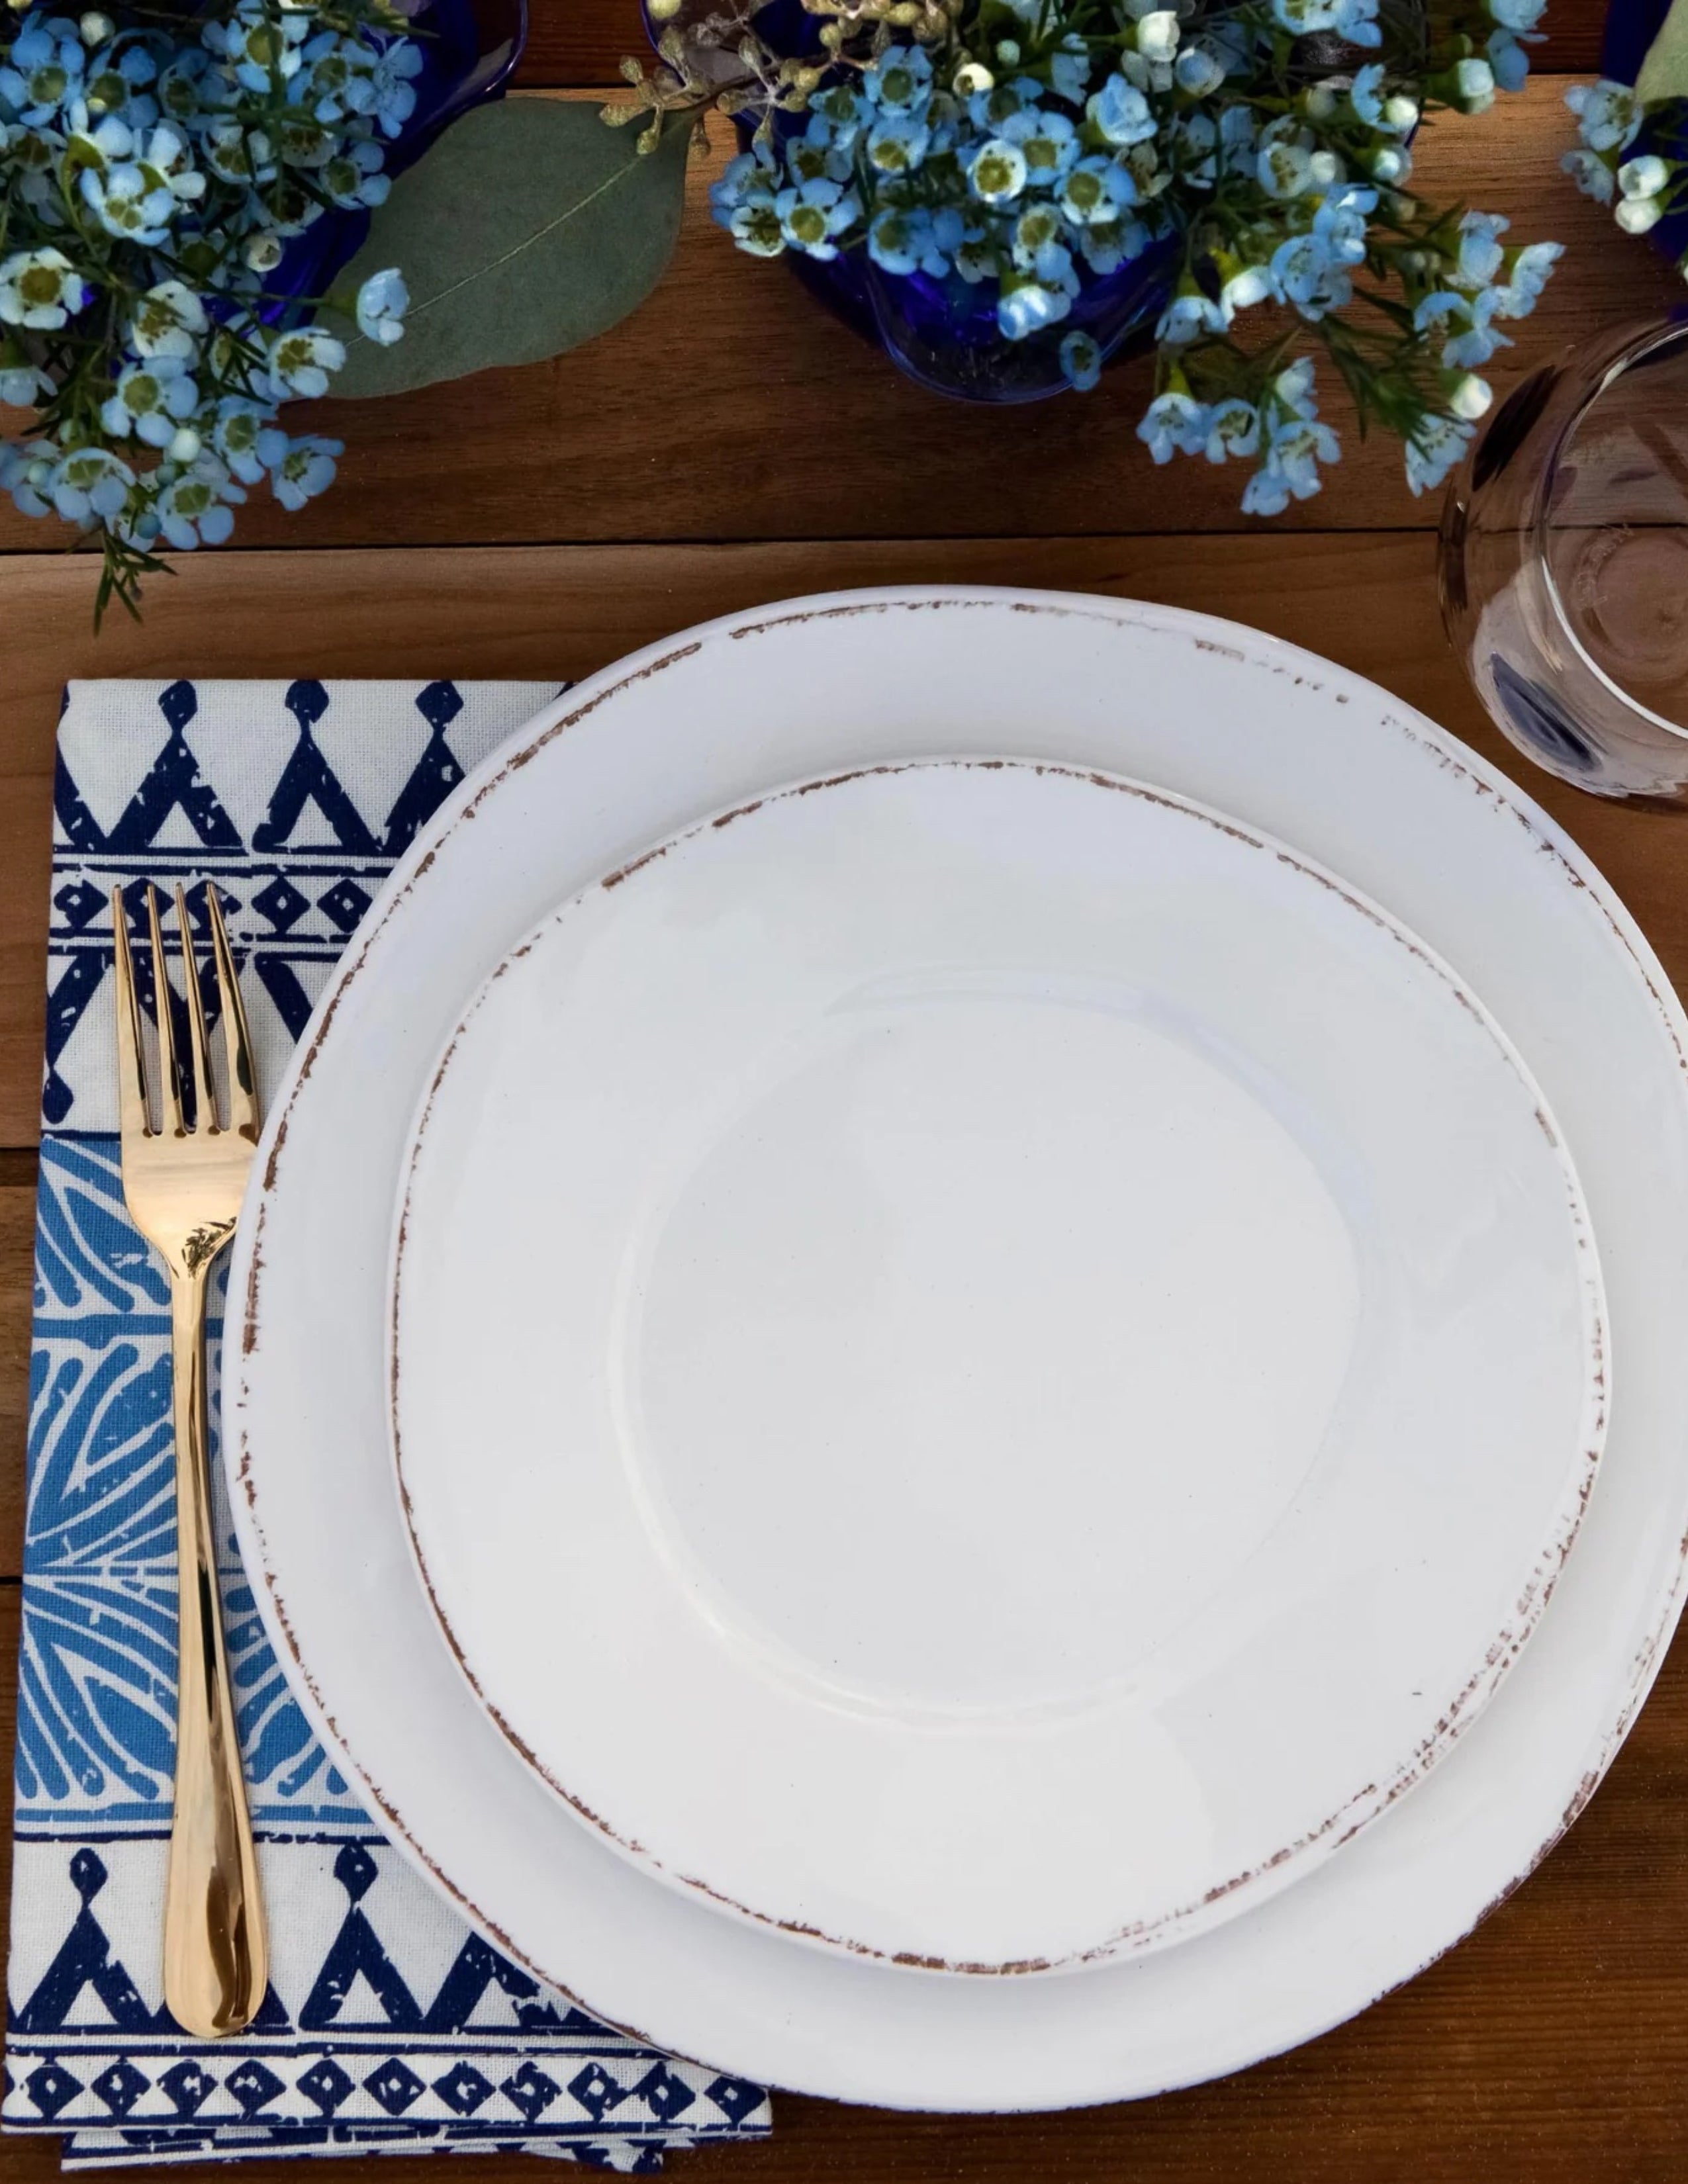 Lastra White Melamine Dinner Plate Set/4